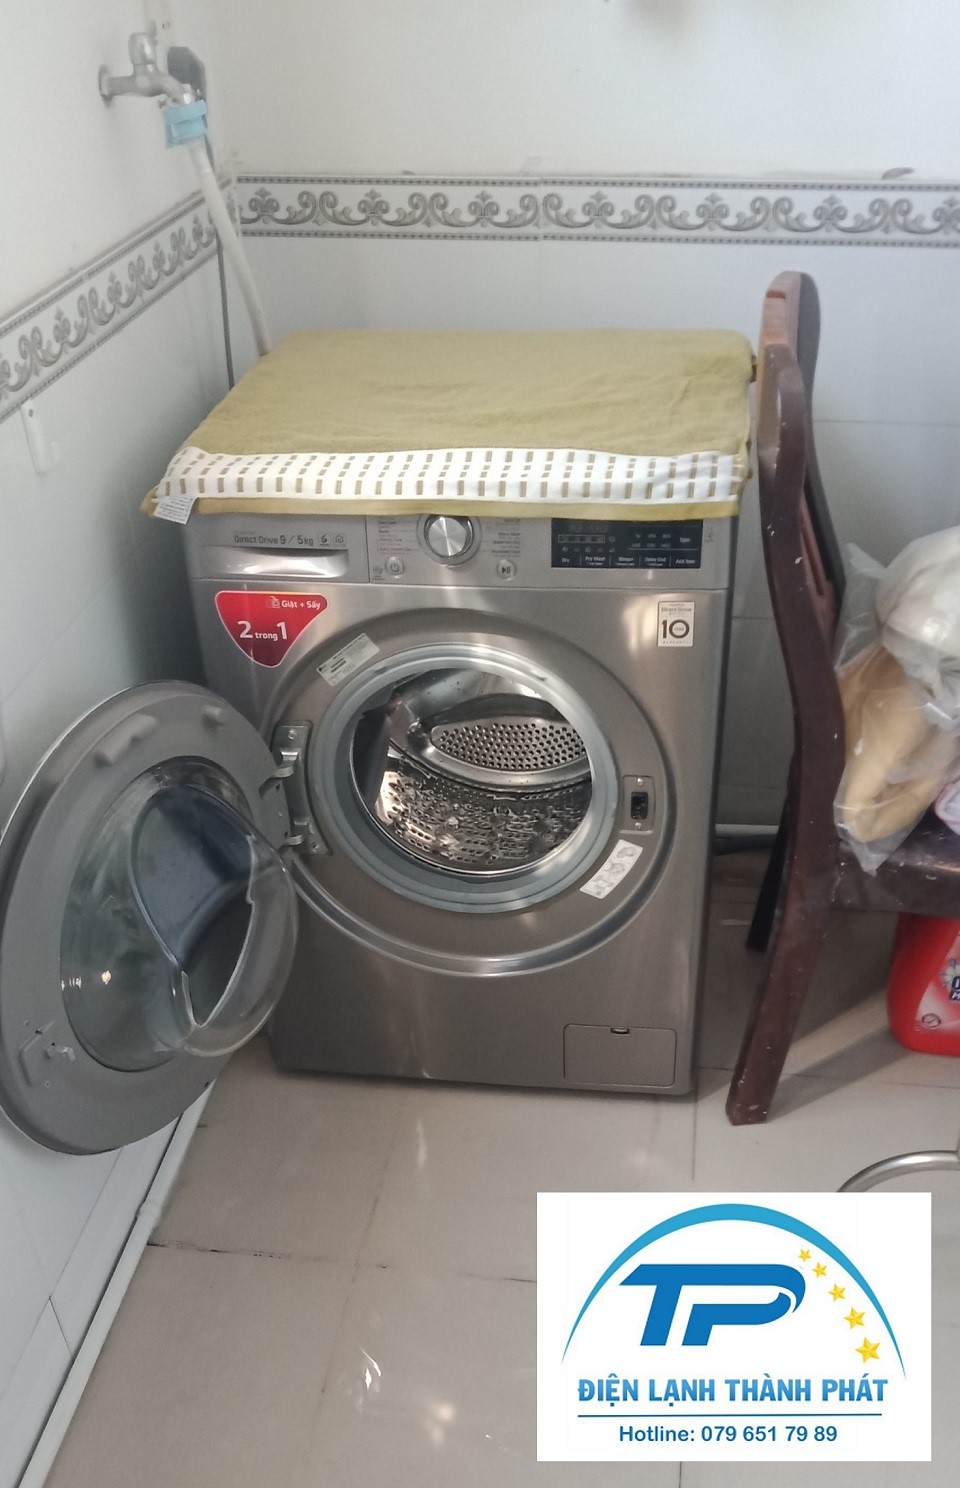 Điện lạnh Thành Phát - Đơn vị cung cấp dịch vụ sửa máy giặt Samsung uy tín.